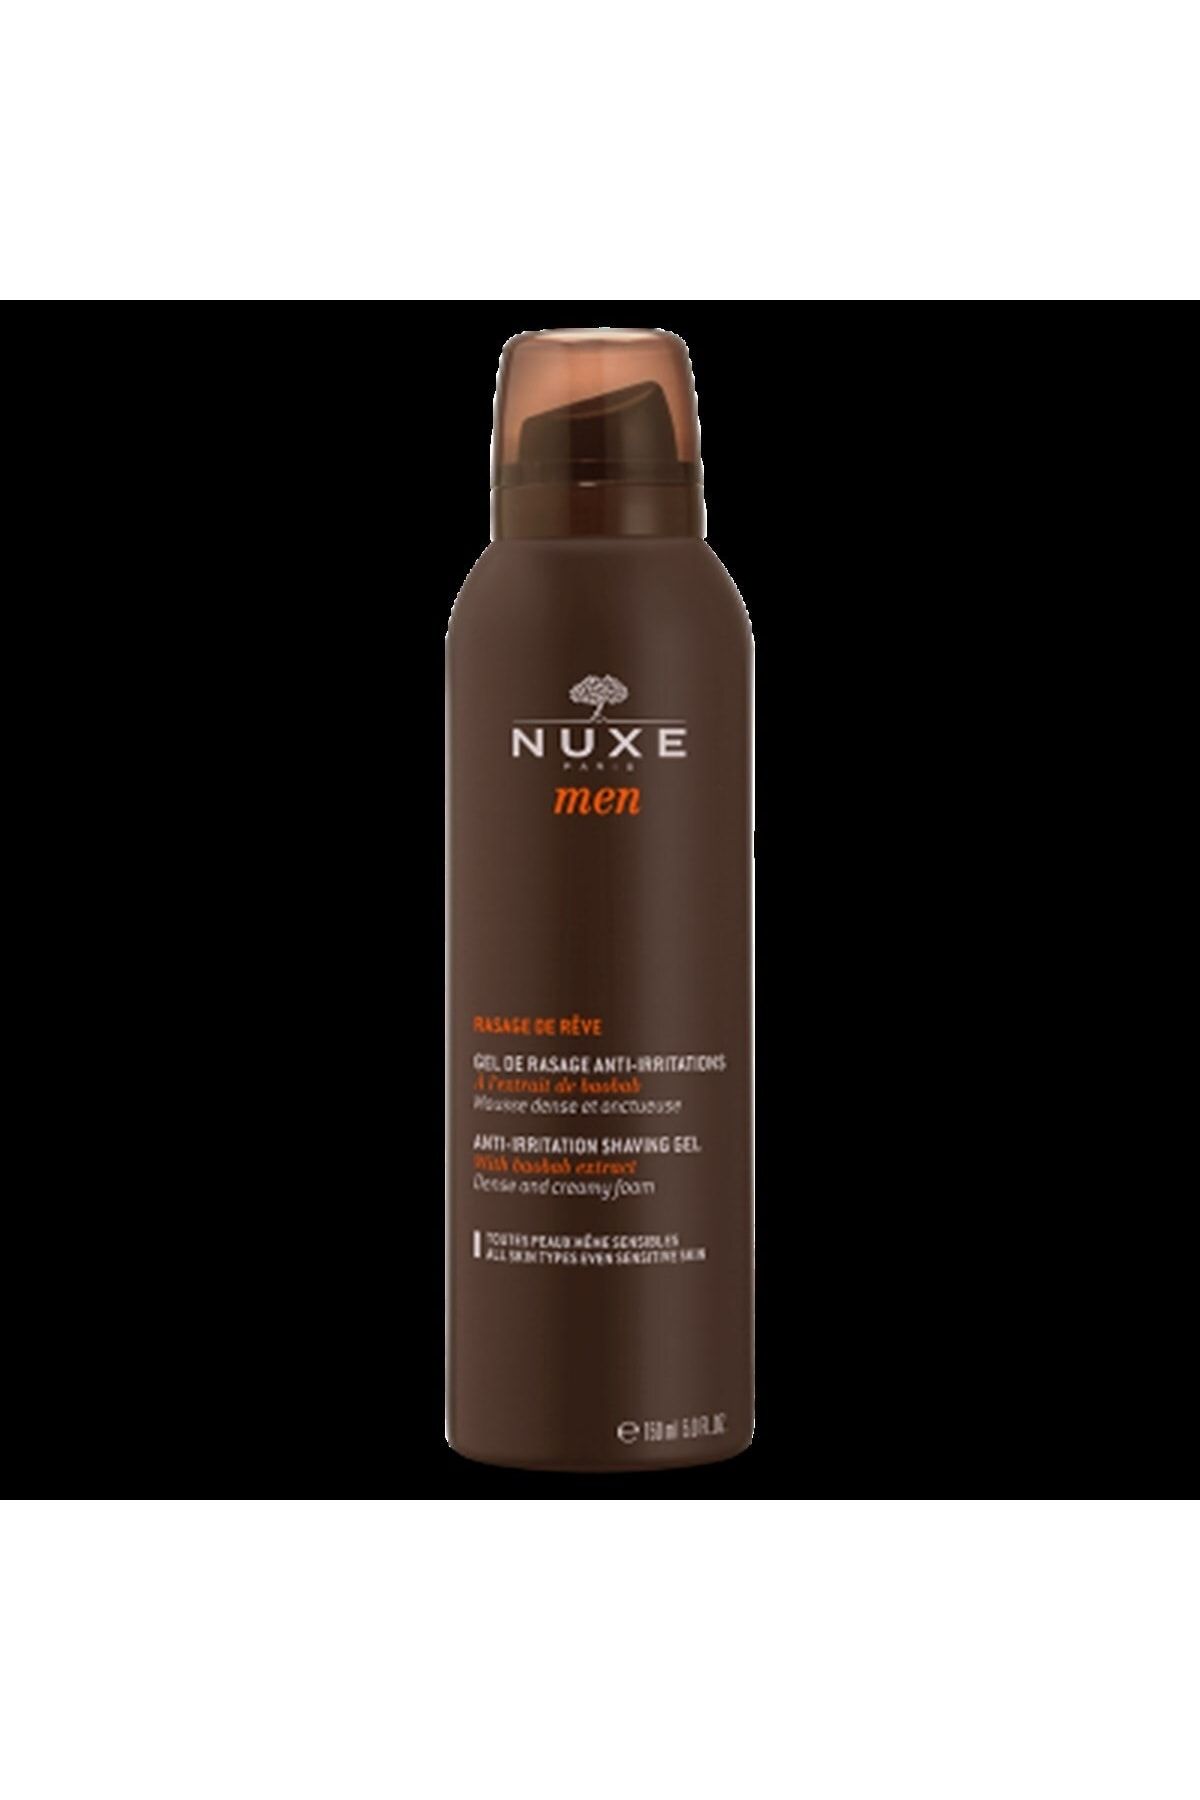 Nuxe ژل اصلاح مردانه با عطر رویا 150 میلی لیتر